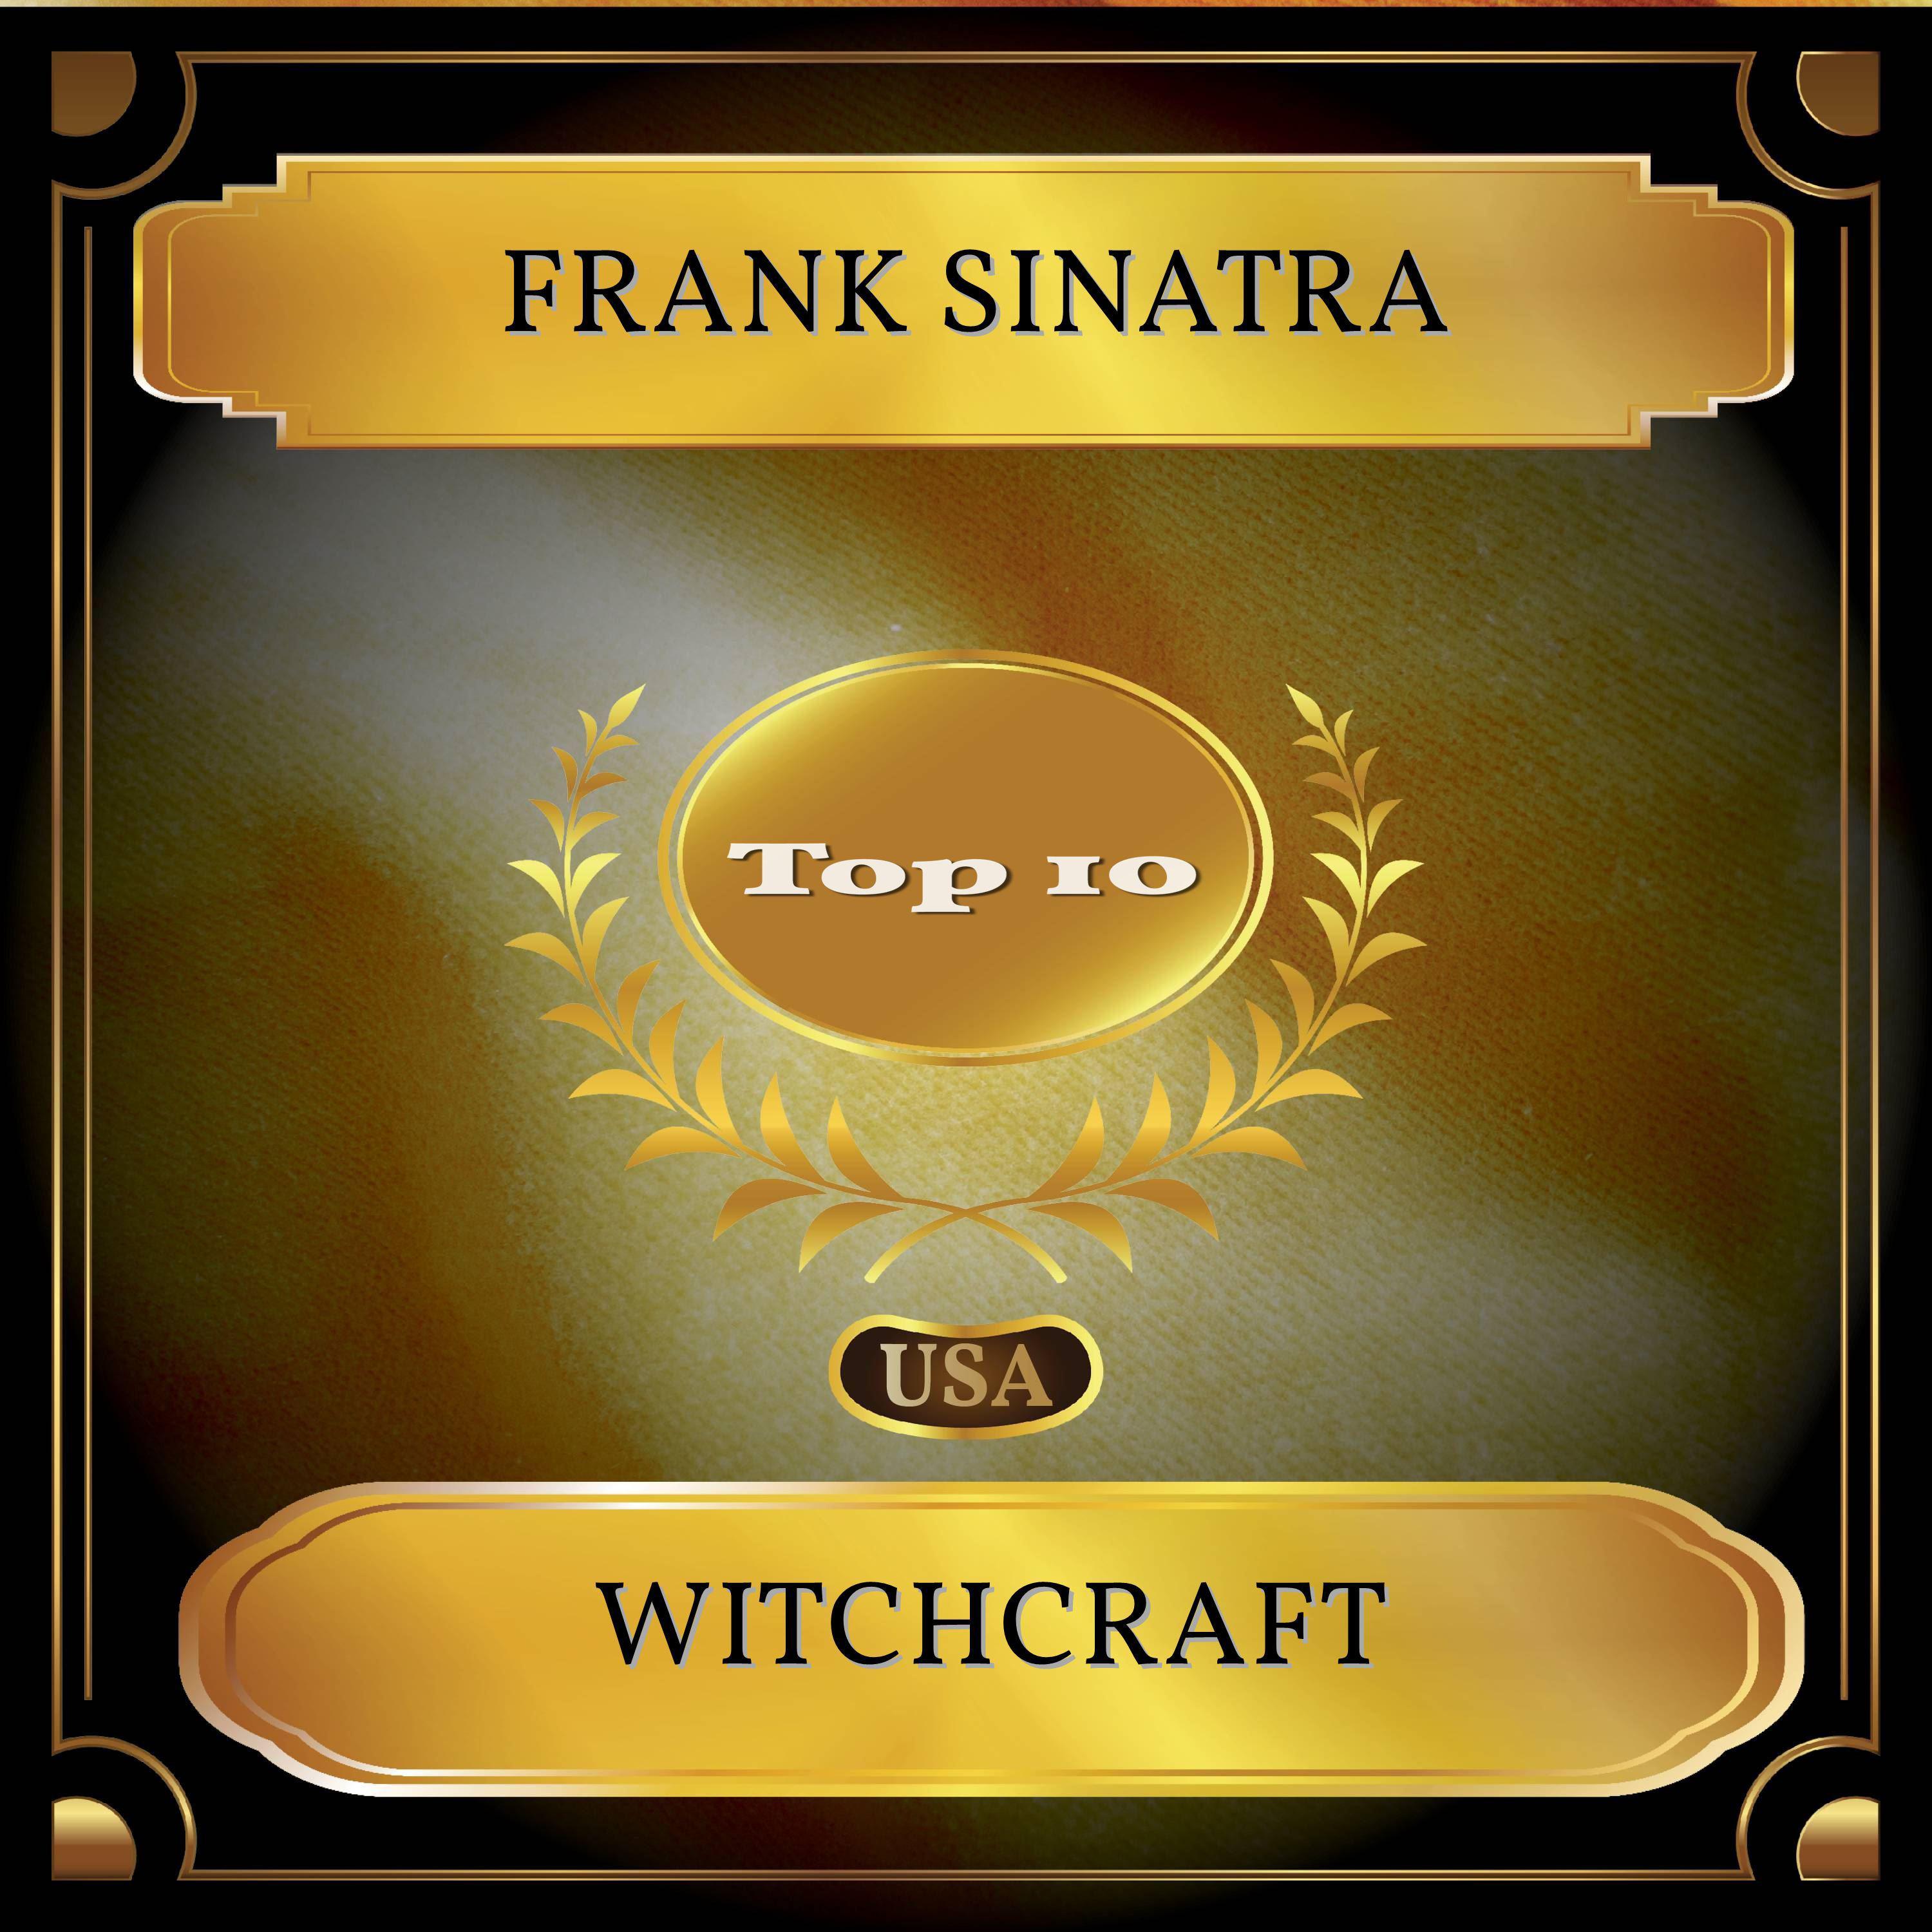 Witchcraft (Billboard Hot 100 - No. 06)